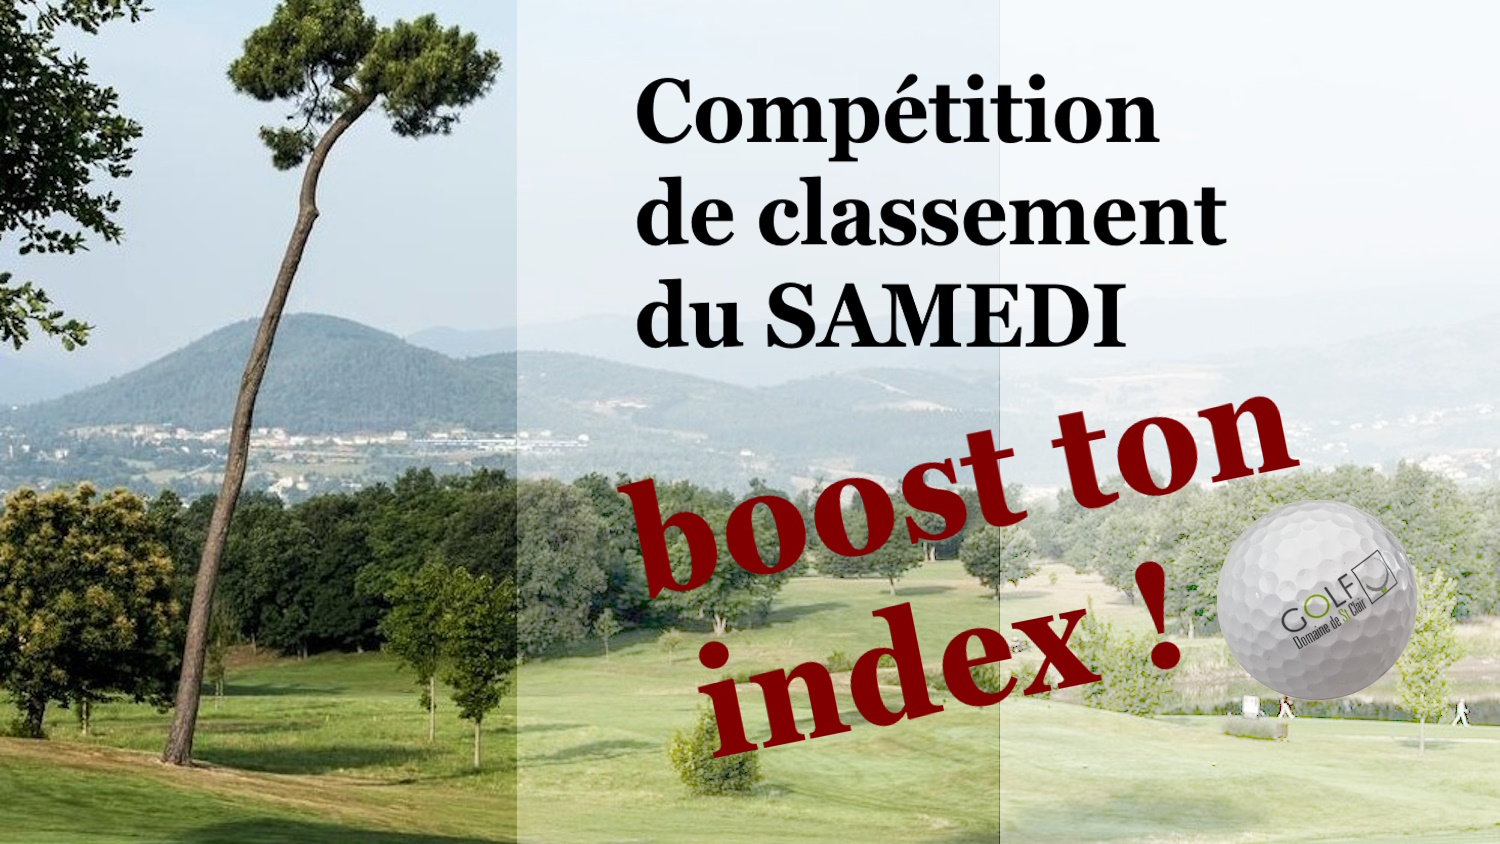 affiche competition de classement samedi boost ton index golf saint clair annonay ardeche